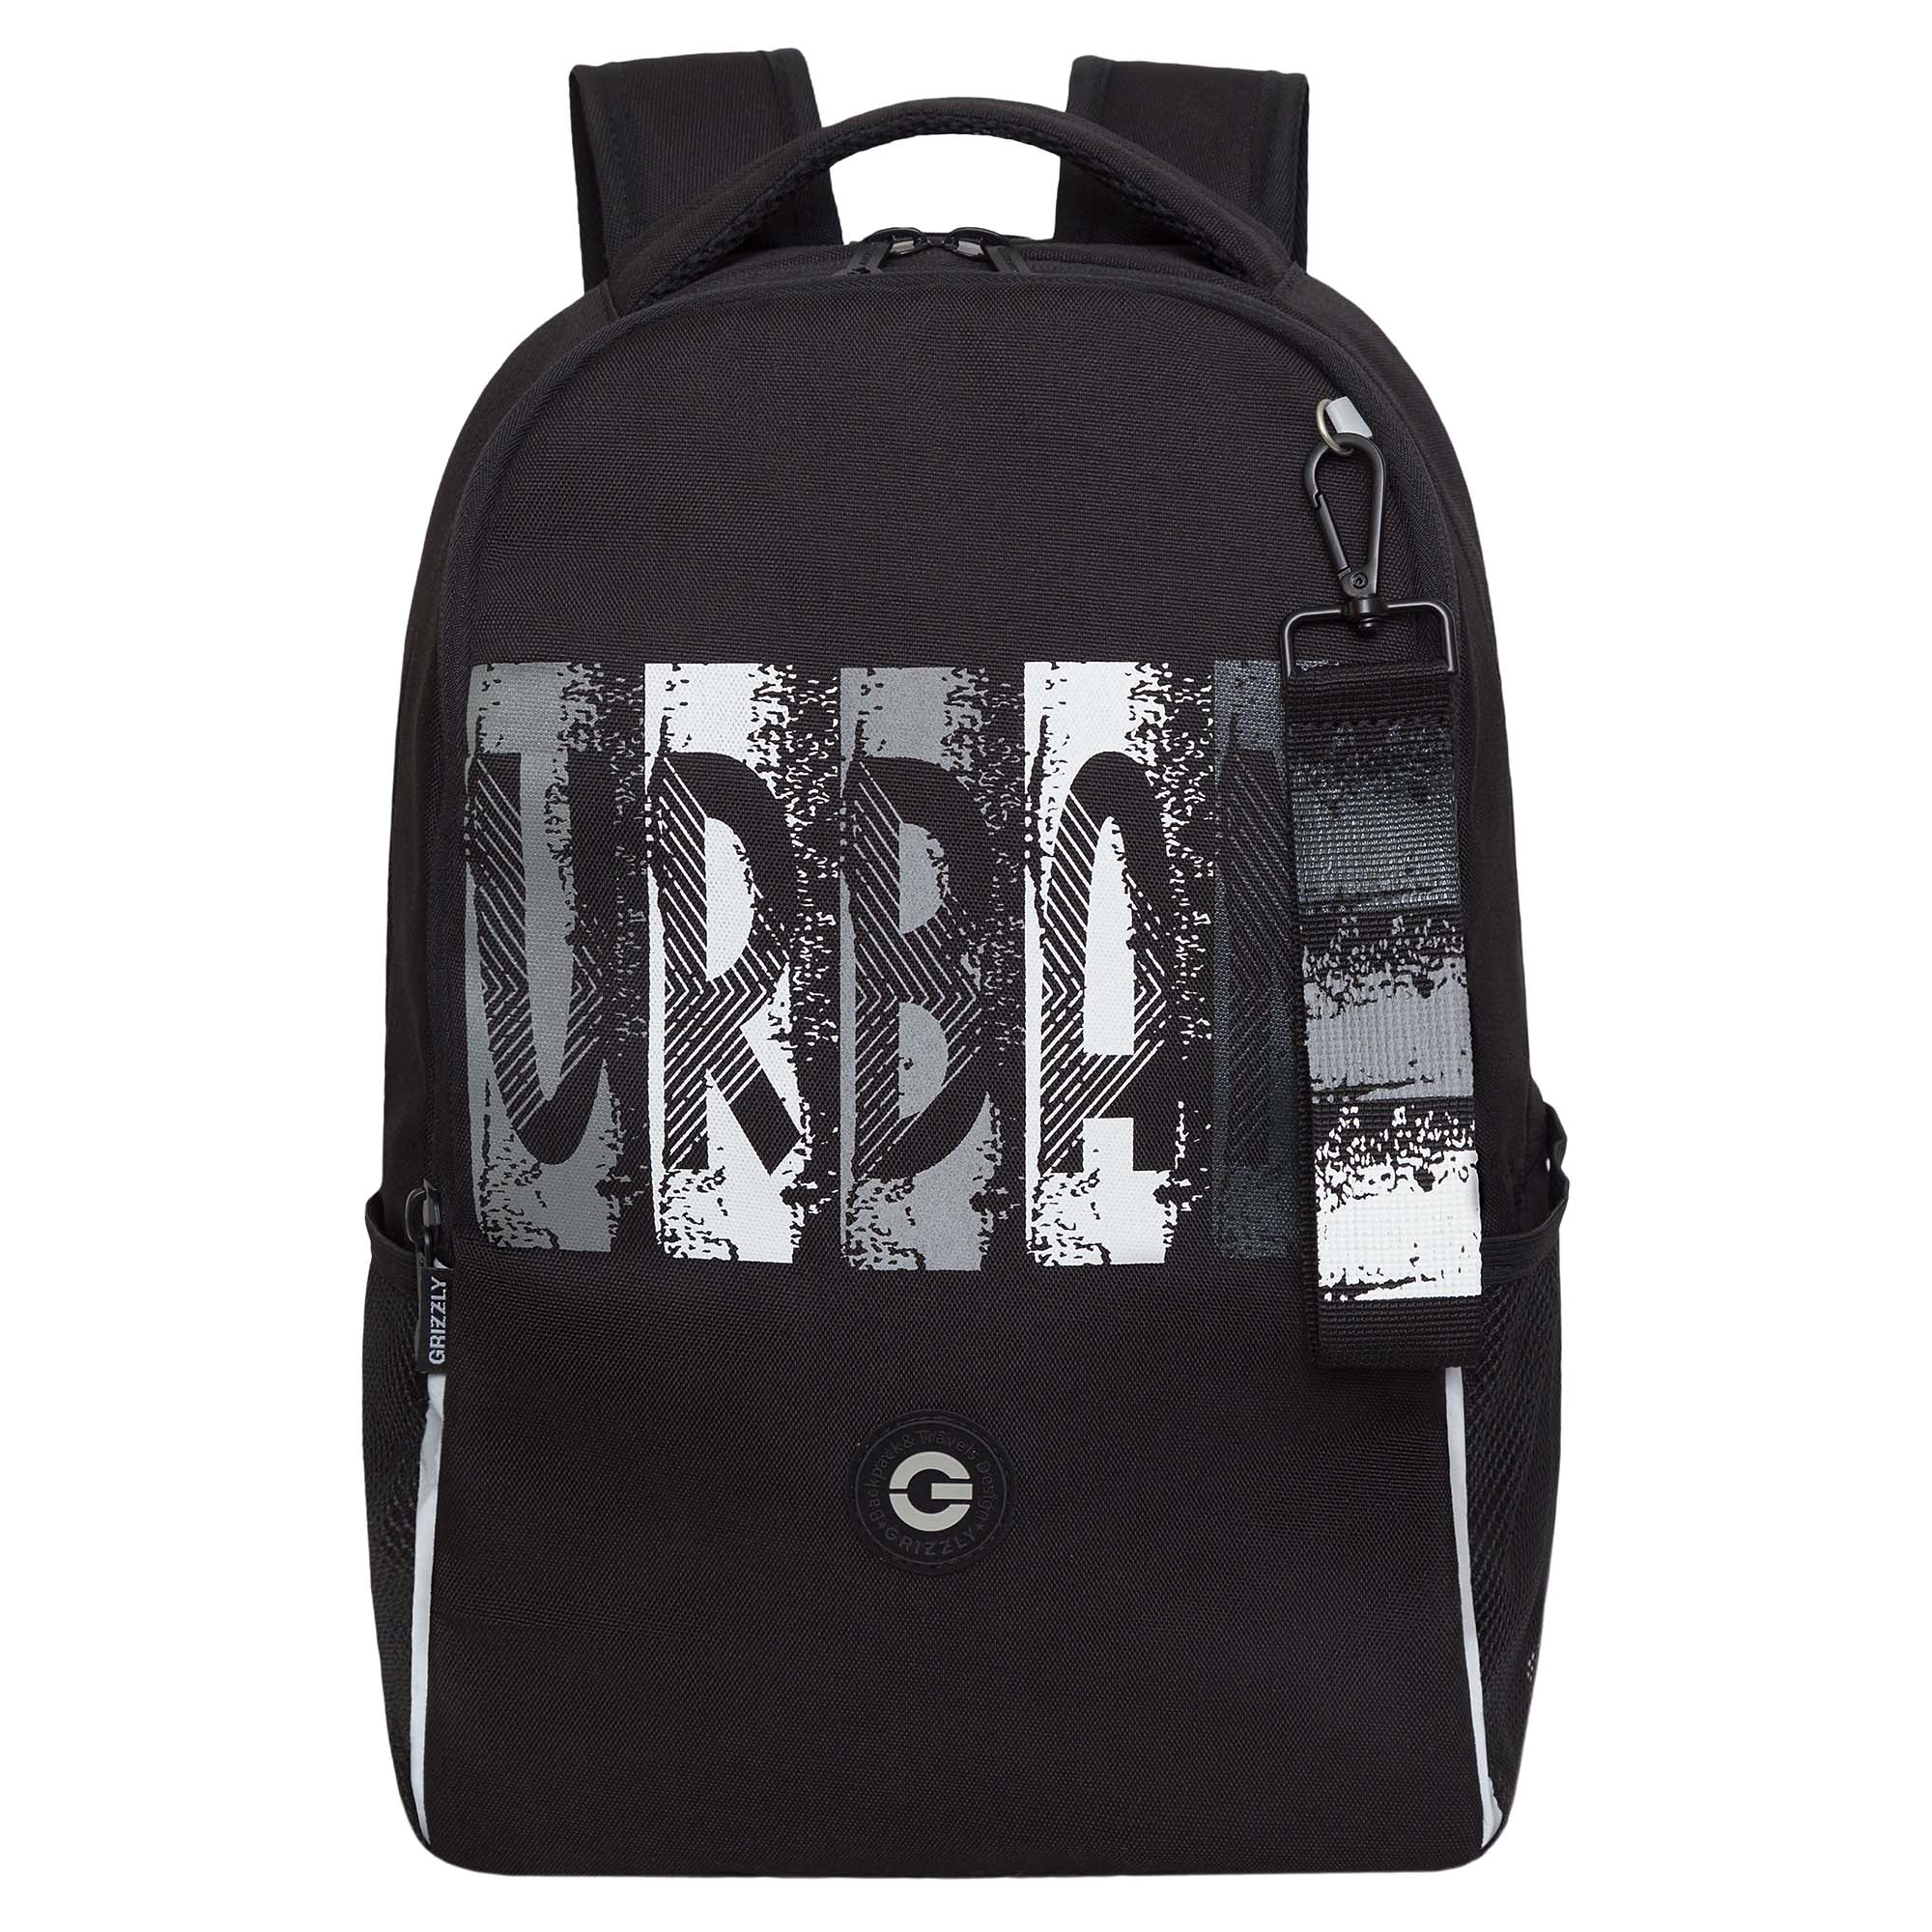 Рюкзак школьный GRIZZLY легкий с жесткой спинкой, 2 отделения, черный; серый, RB-451-3/2 рюкзак школьный grizzly с карманом для ноутбука 13 2 отделения для девочки rg 466 2 1